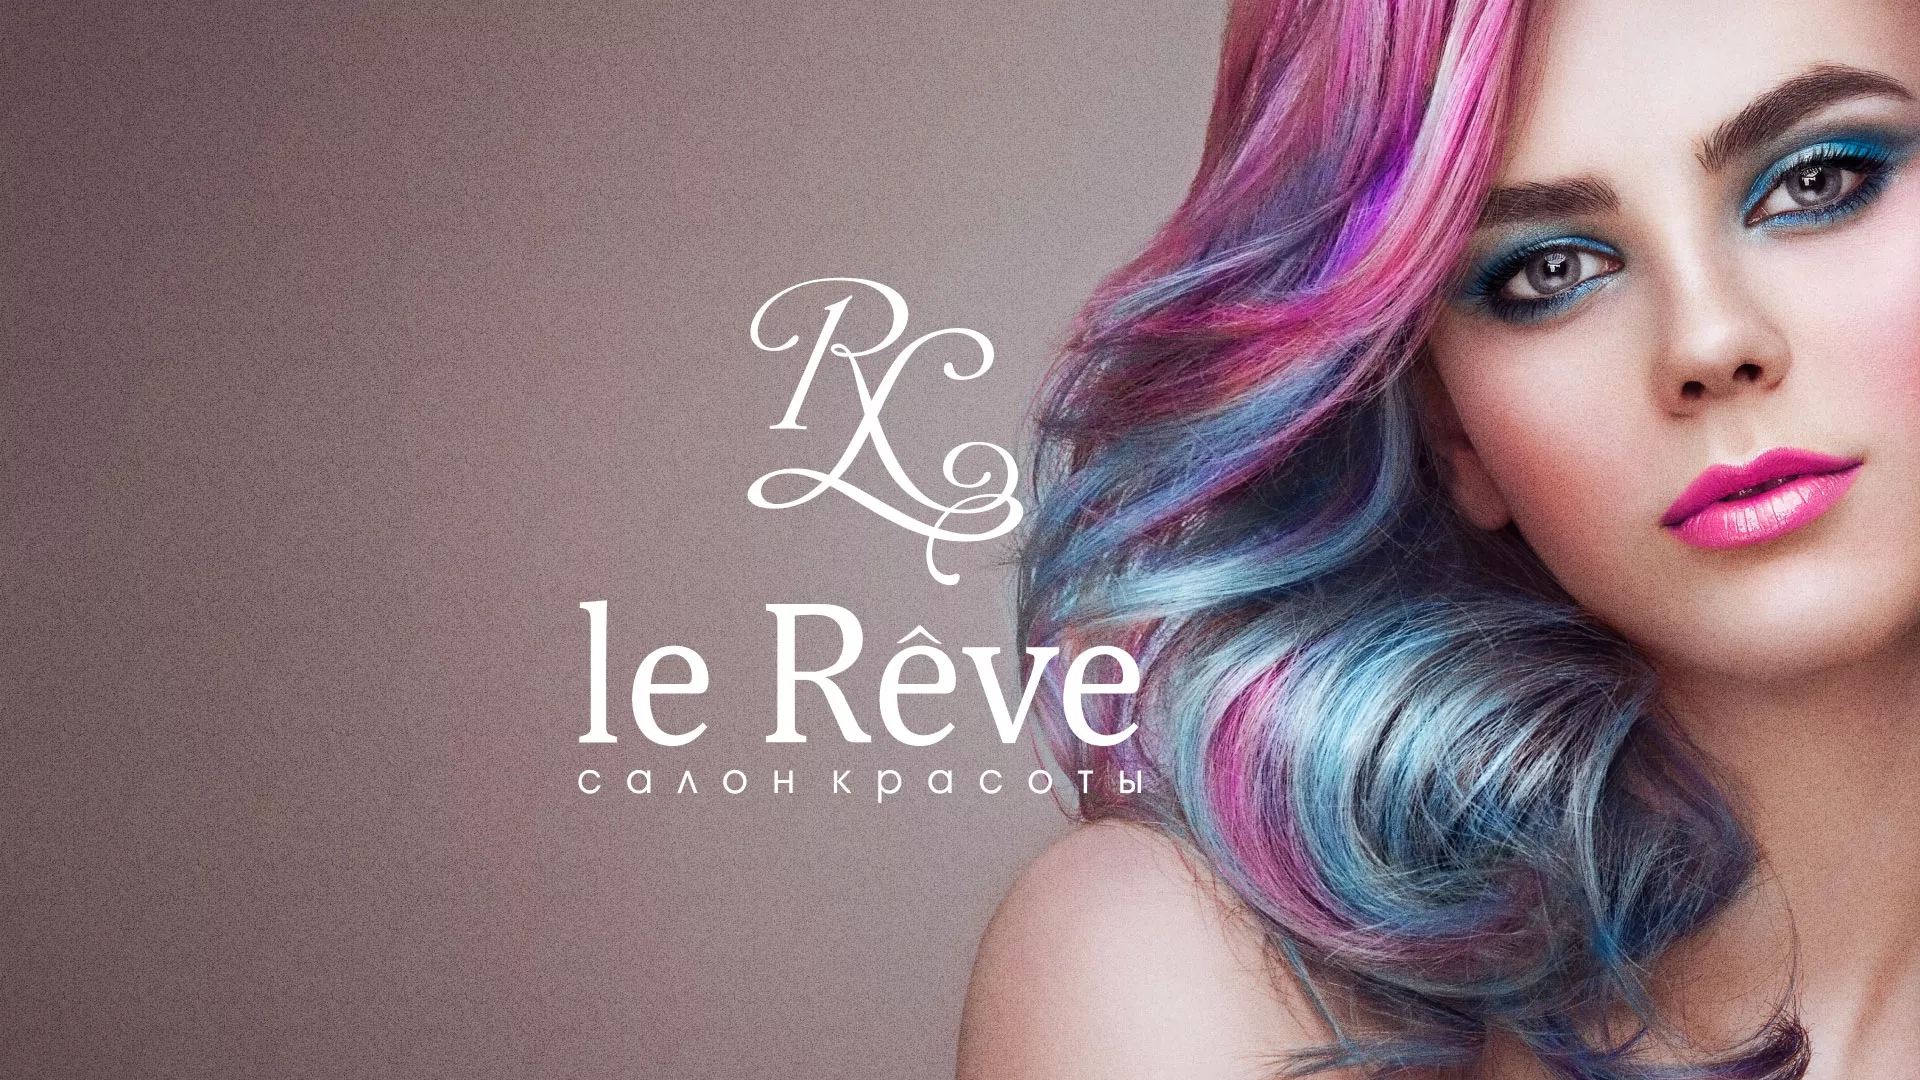 Создание сайта для салона красоты «Le Reve» в Фокино